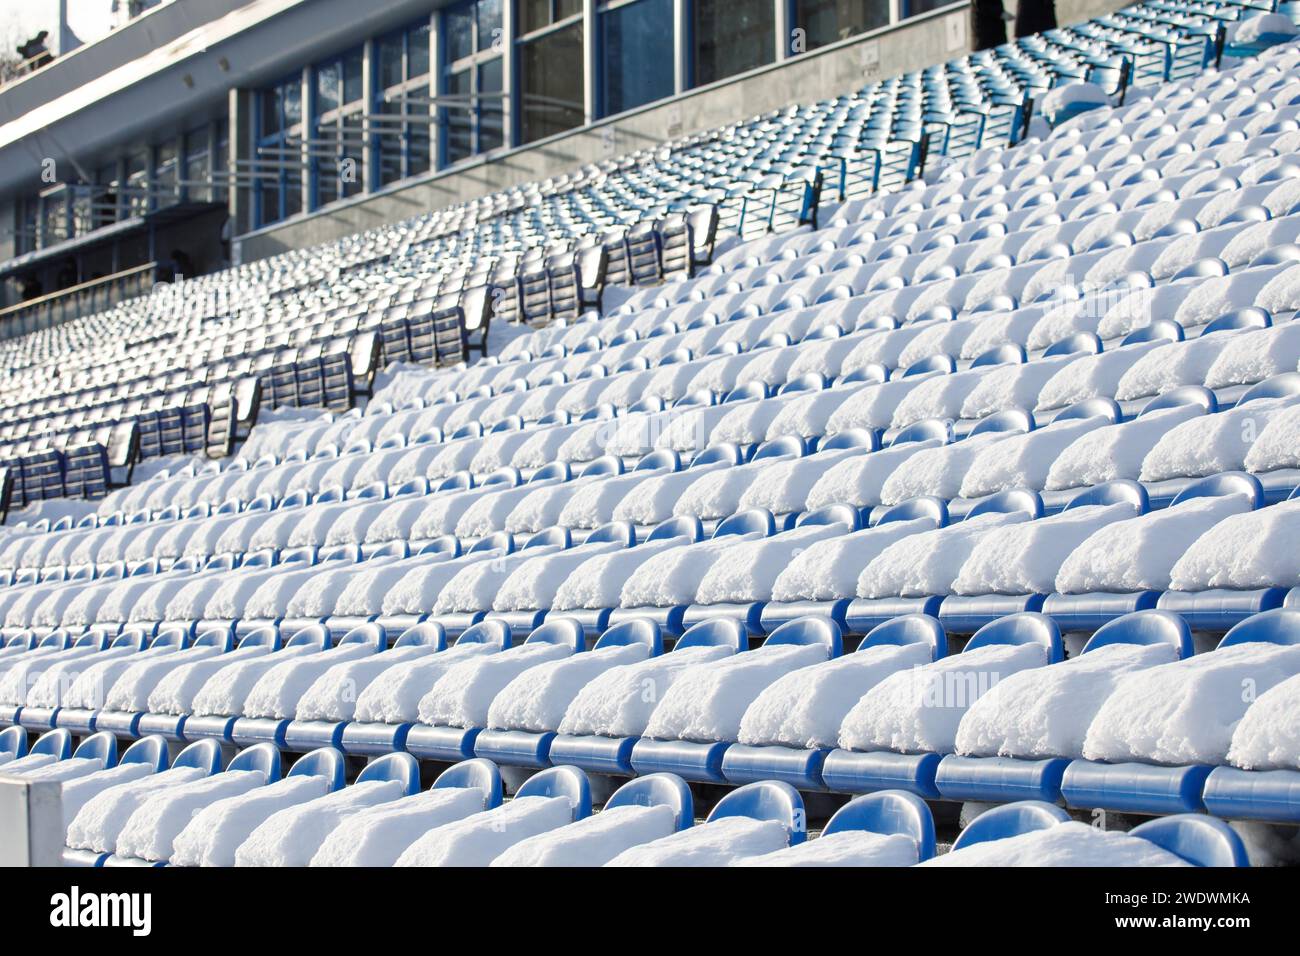 Die Sitzplätze der Stadiontribüne sind mit Schnee bedeckt. Hochwertige Fotos Stockfoto